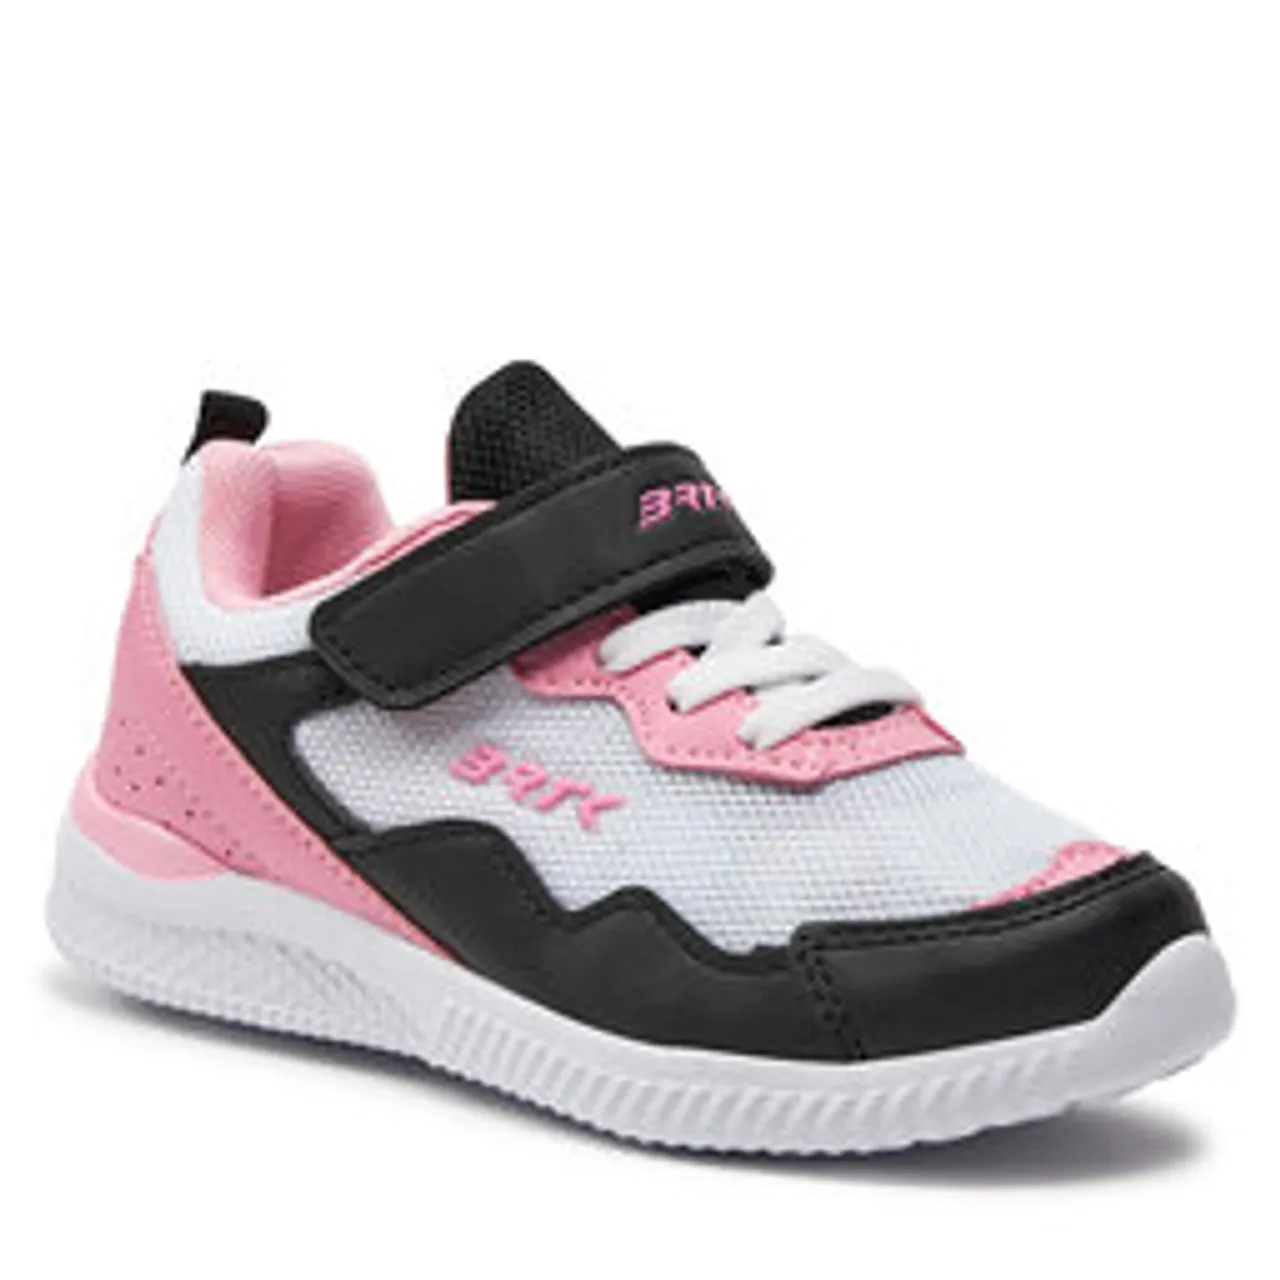 Sneakers Bartek 15439004 Biały/Czarny/Róż